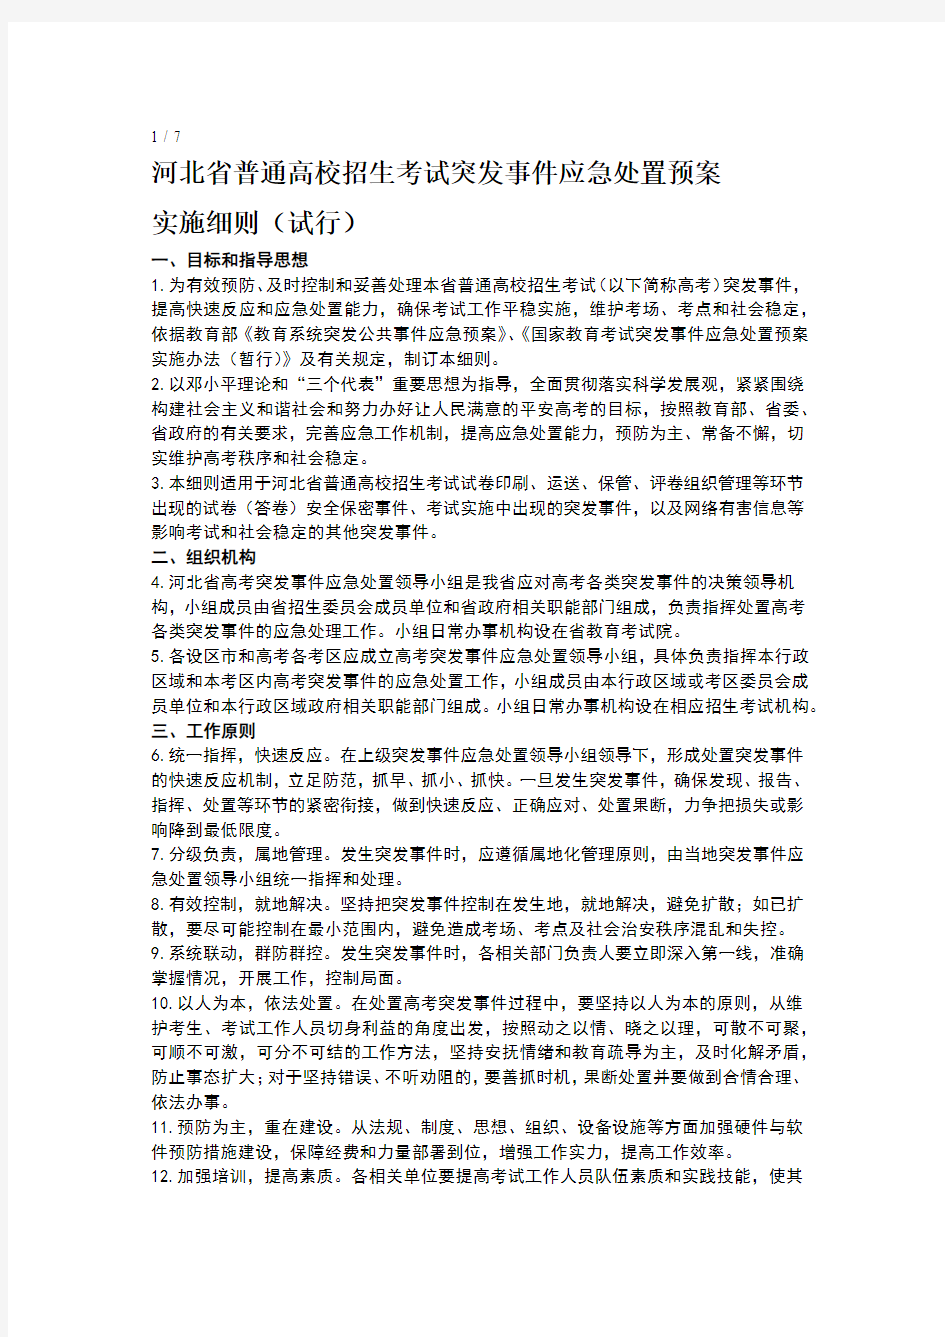 河北省普通高考突发事件应急处置预案下行版